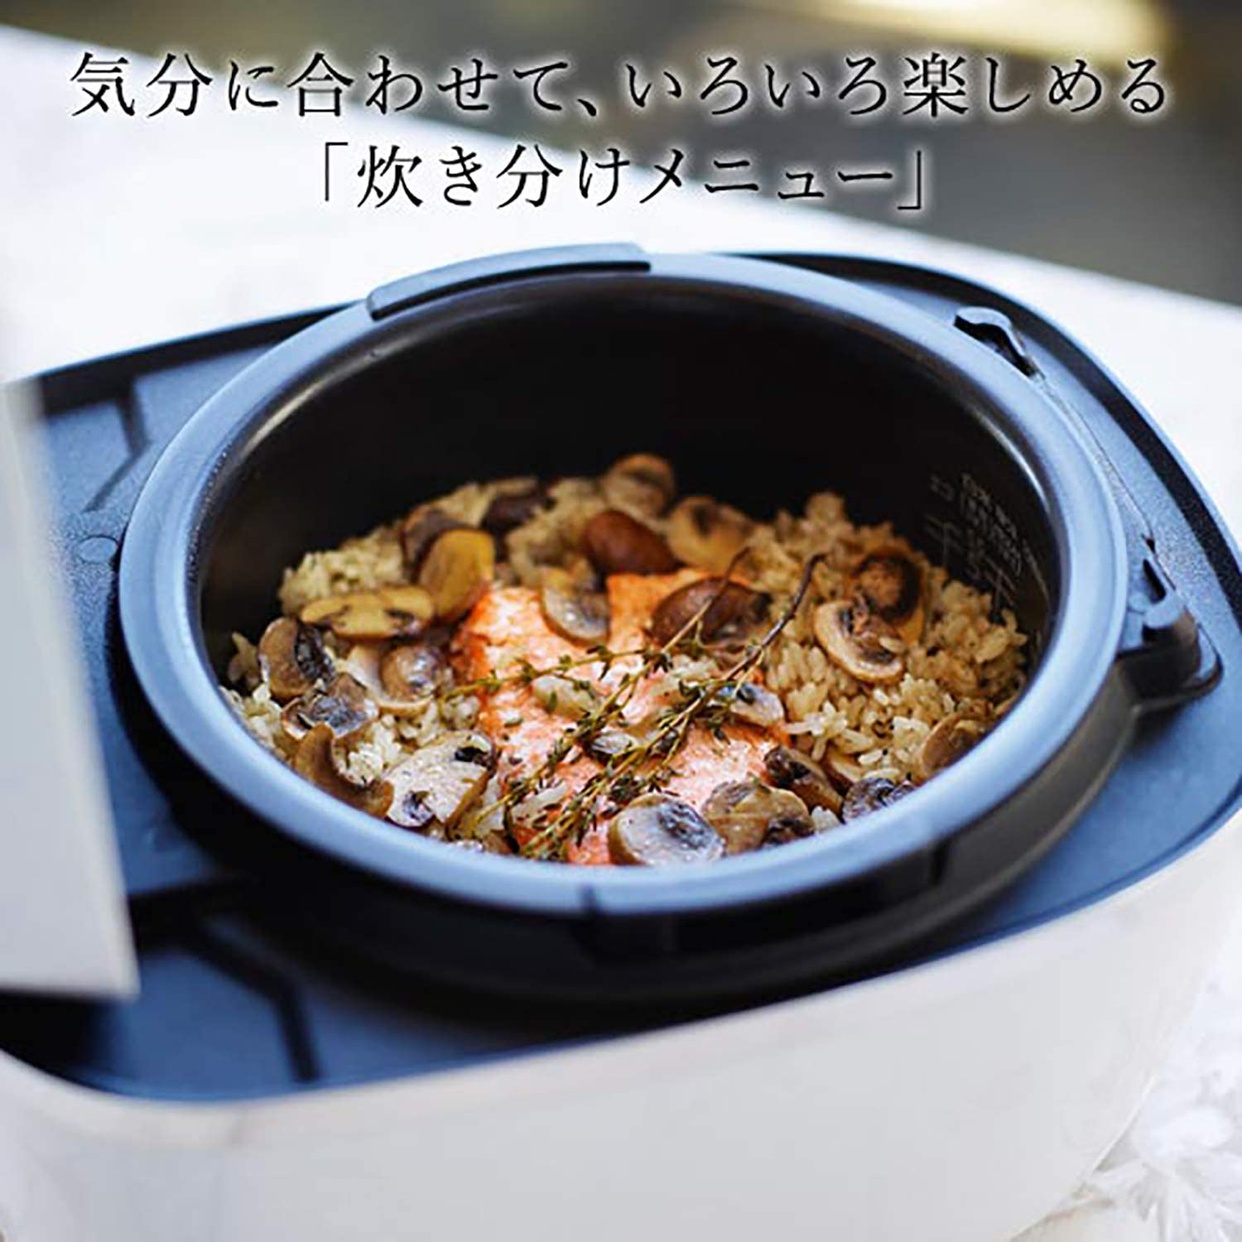 タイガー魔法瓶(TIGER) 圧力IH炊飯ジャー JPC-A102の商品画像サムネ5 